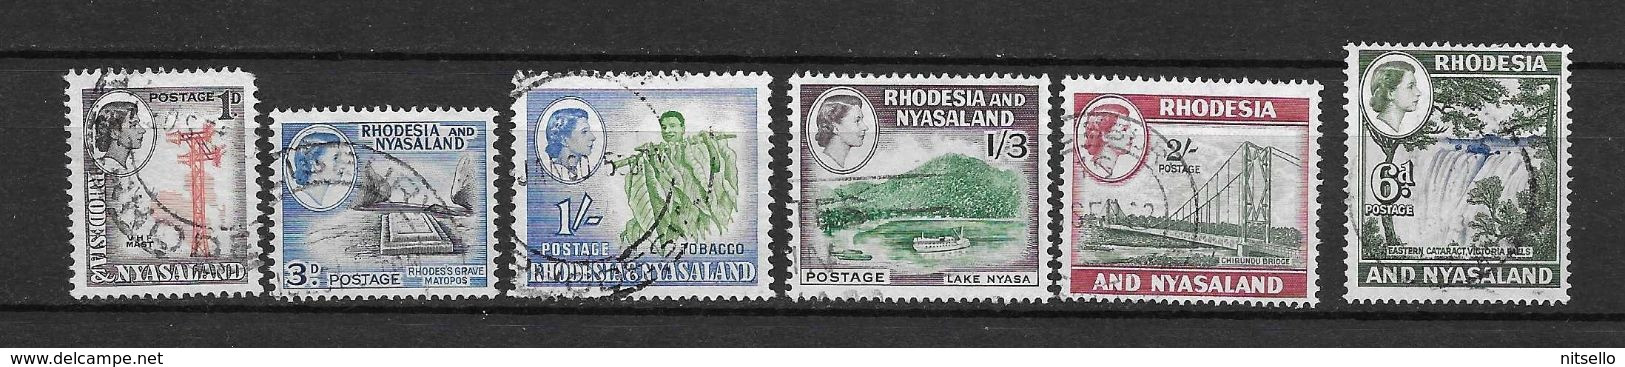 LOTE 2219A  ///   (C012)  RODESIA & NYASALAND          ¡¡¡¡¡ LIQUIDATION!!!!! - Rhodesië & Nyasaland (1954-1963)